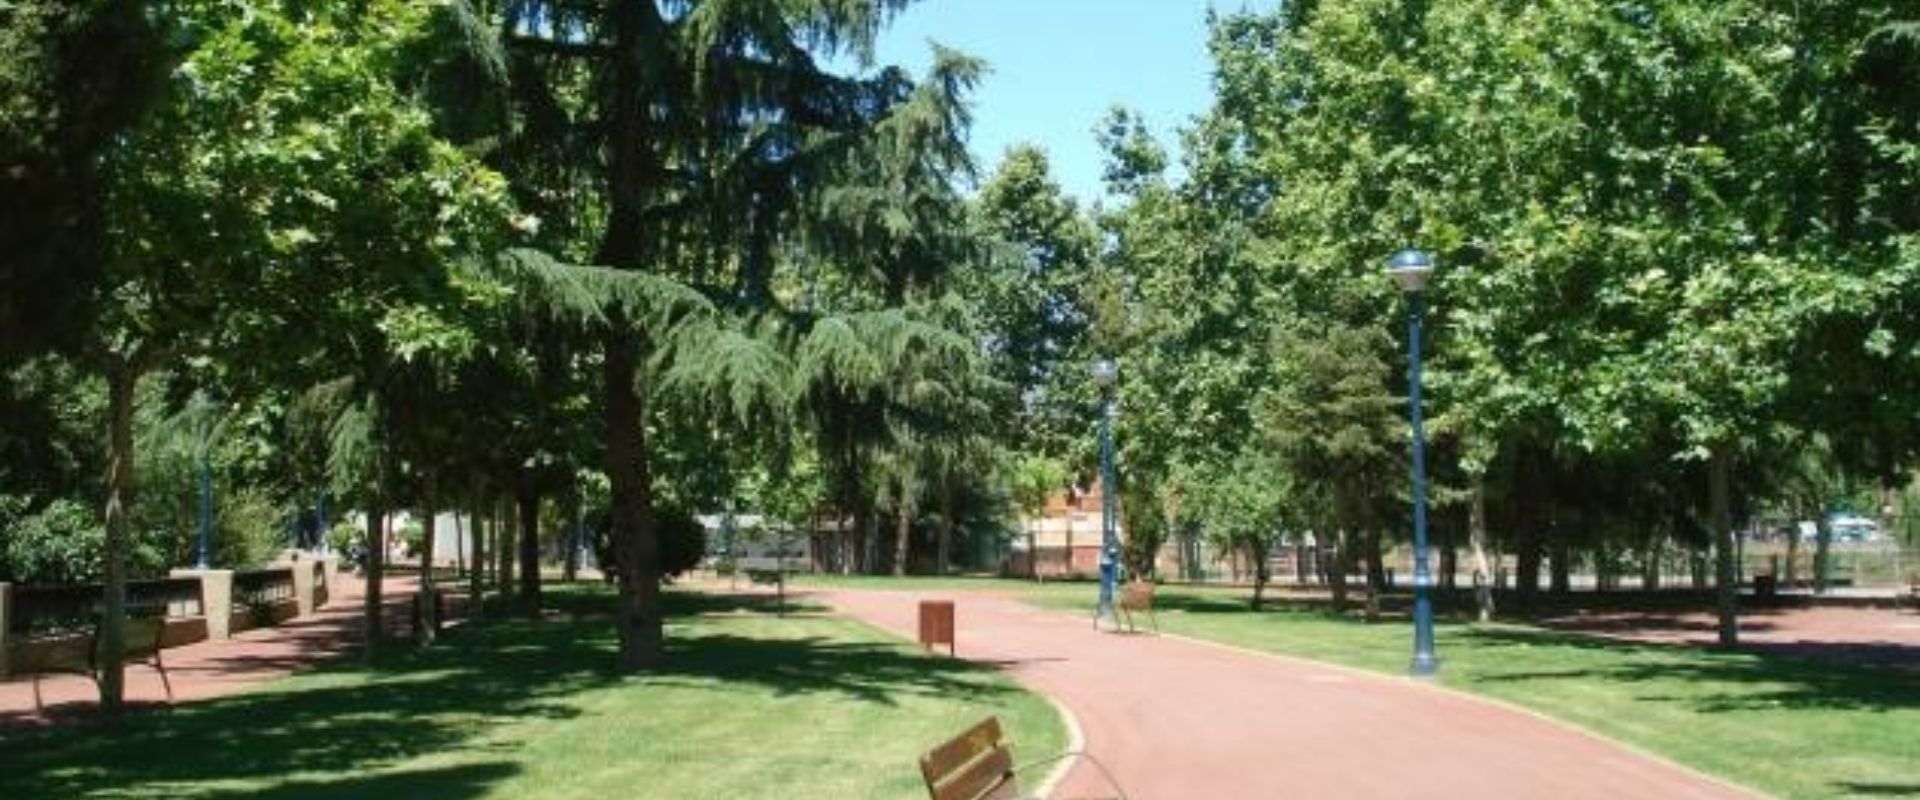 Parque de la Concordia Ponferrada